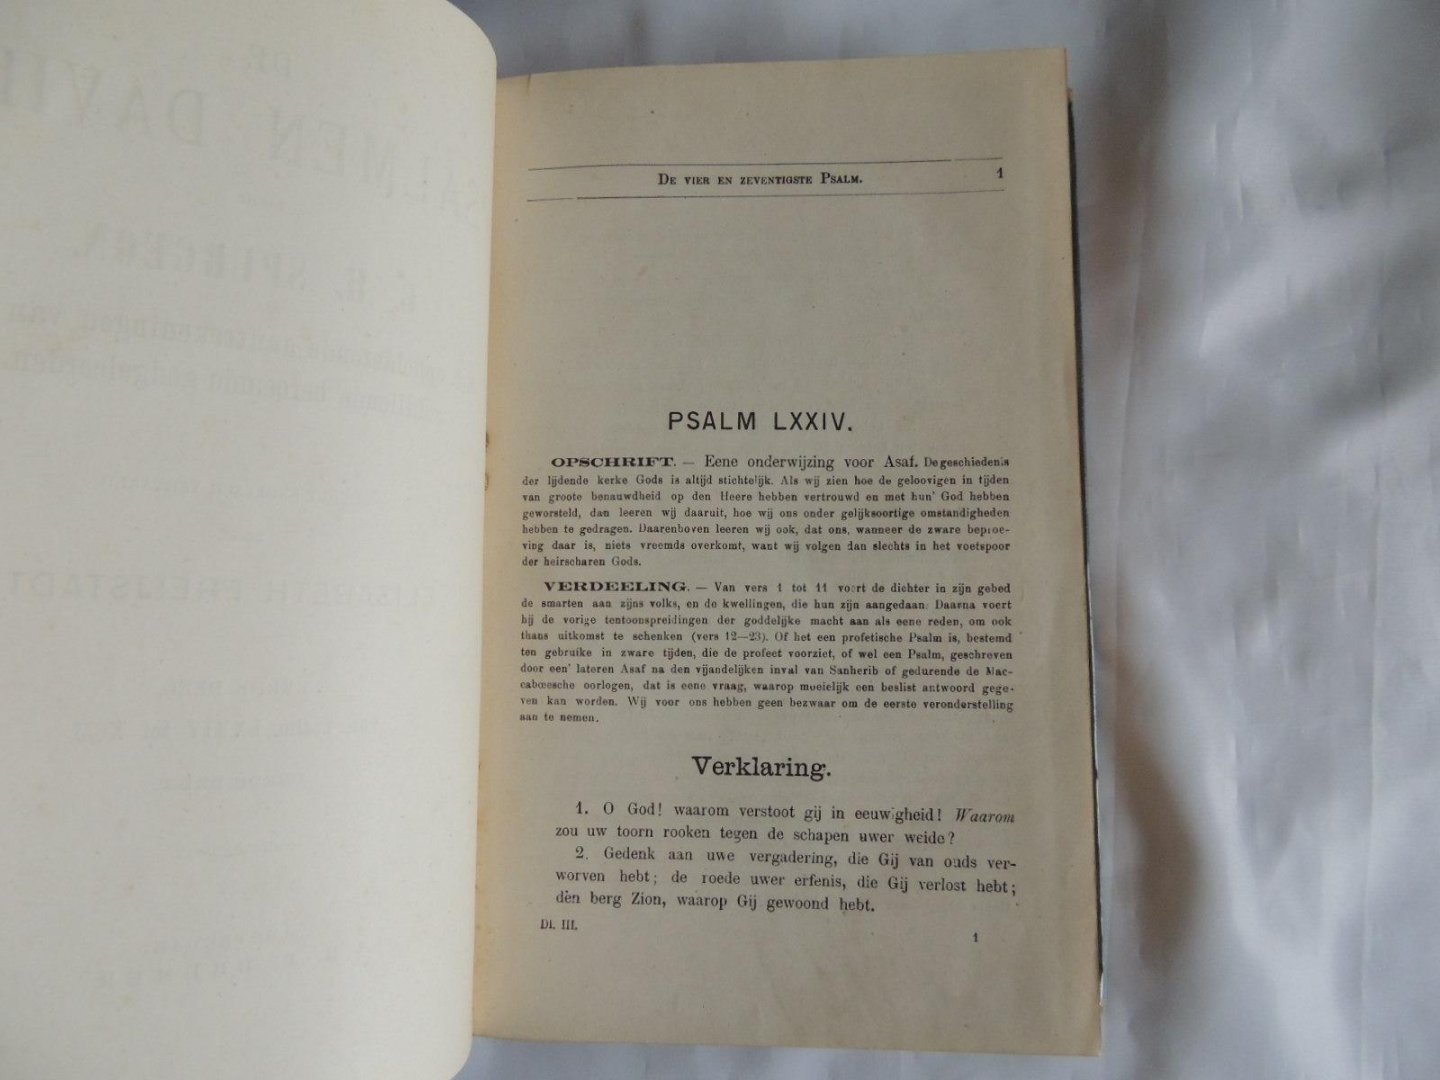 Spurgeon C. H. - Elisabeth Freijstadt - De Psalmen Davids door C.H. Spurgeon. met ophelderende aanteekening en van verschillende beroemde Godgeleerden